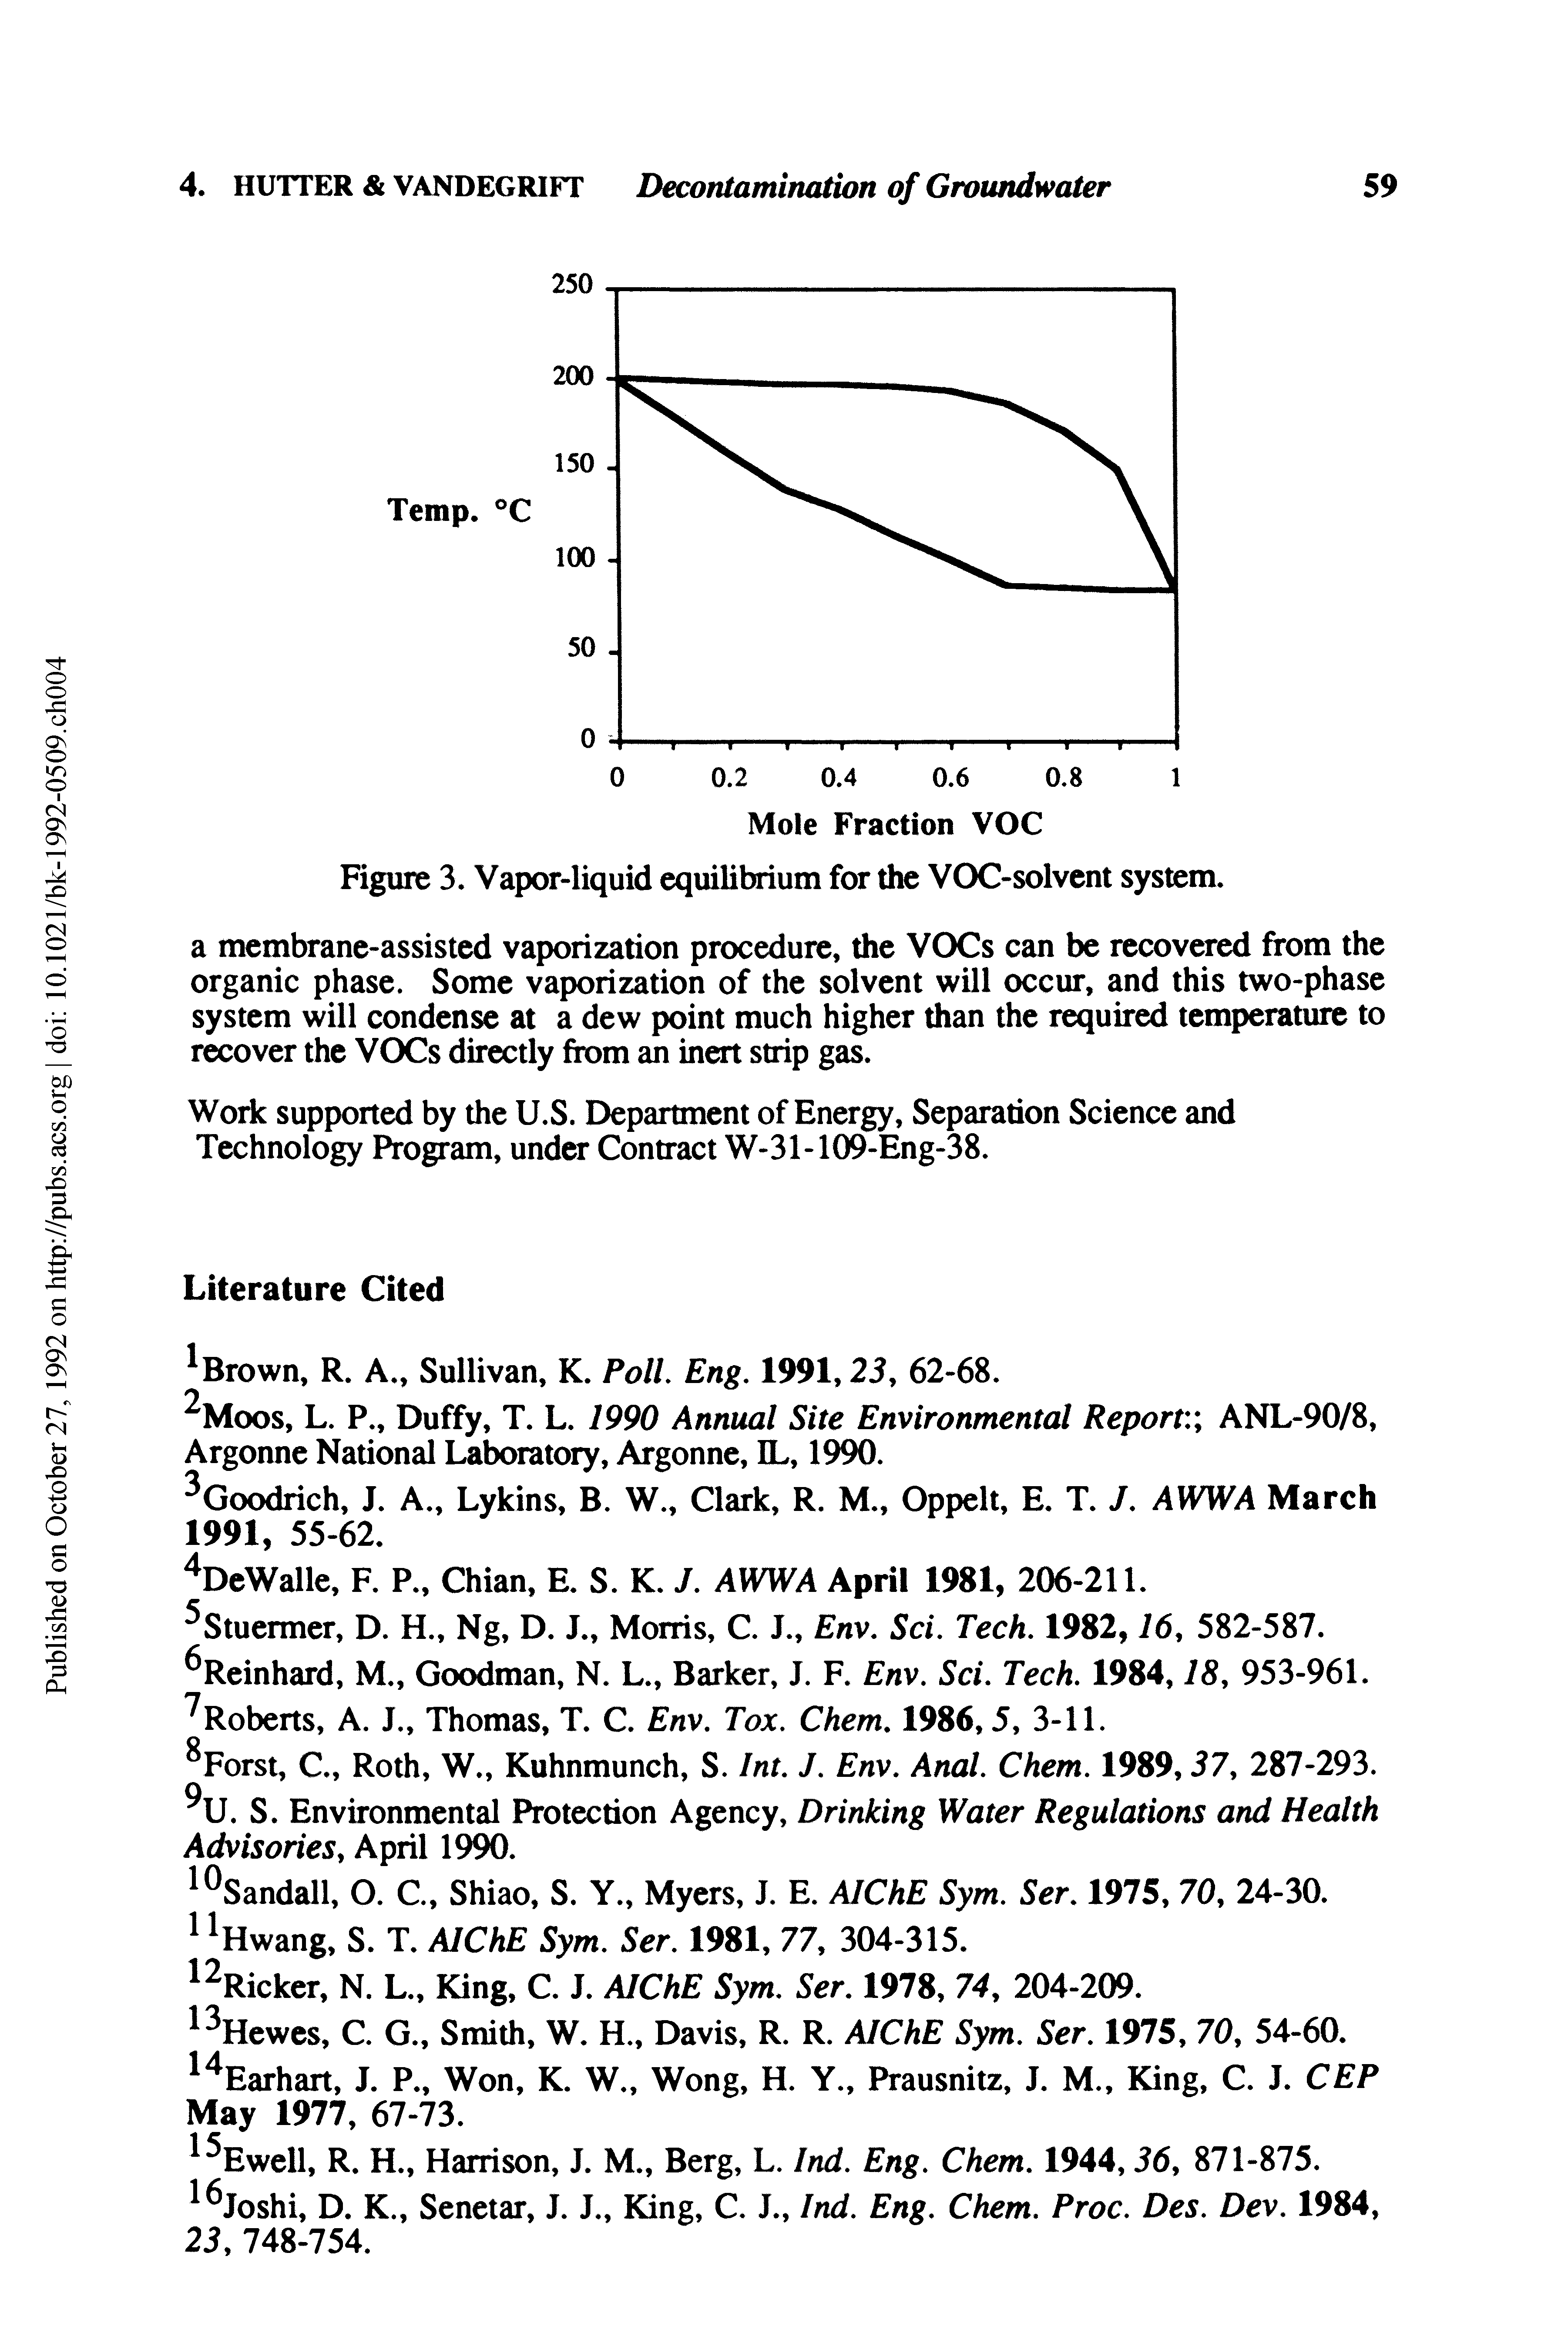 Figure 3. Vapor-liquid equilibrium for the VOC-solvent system.